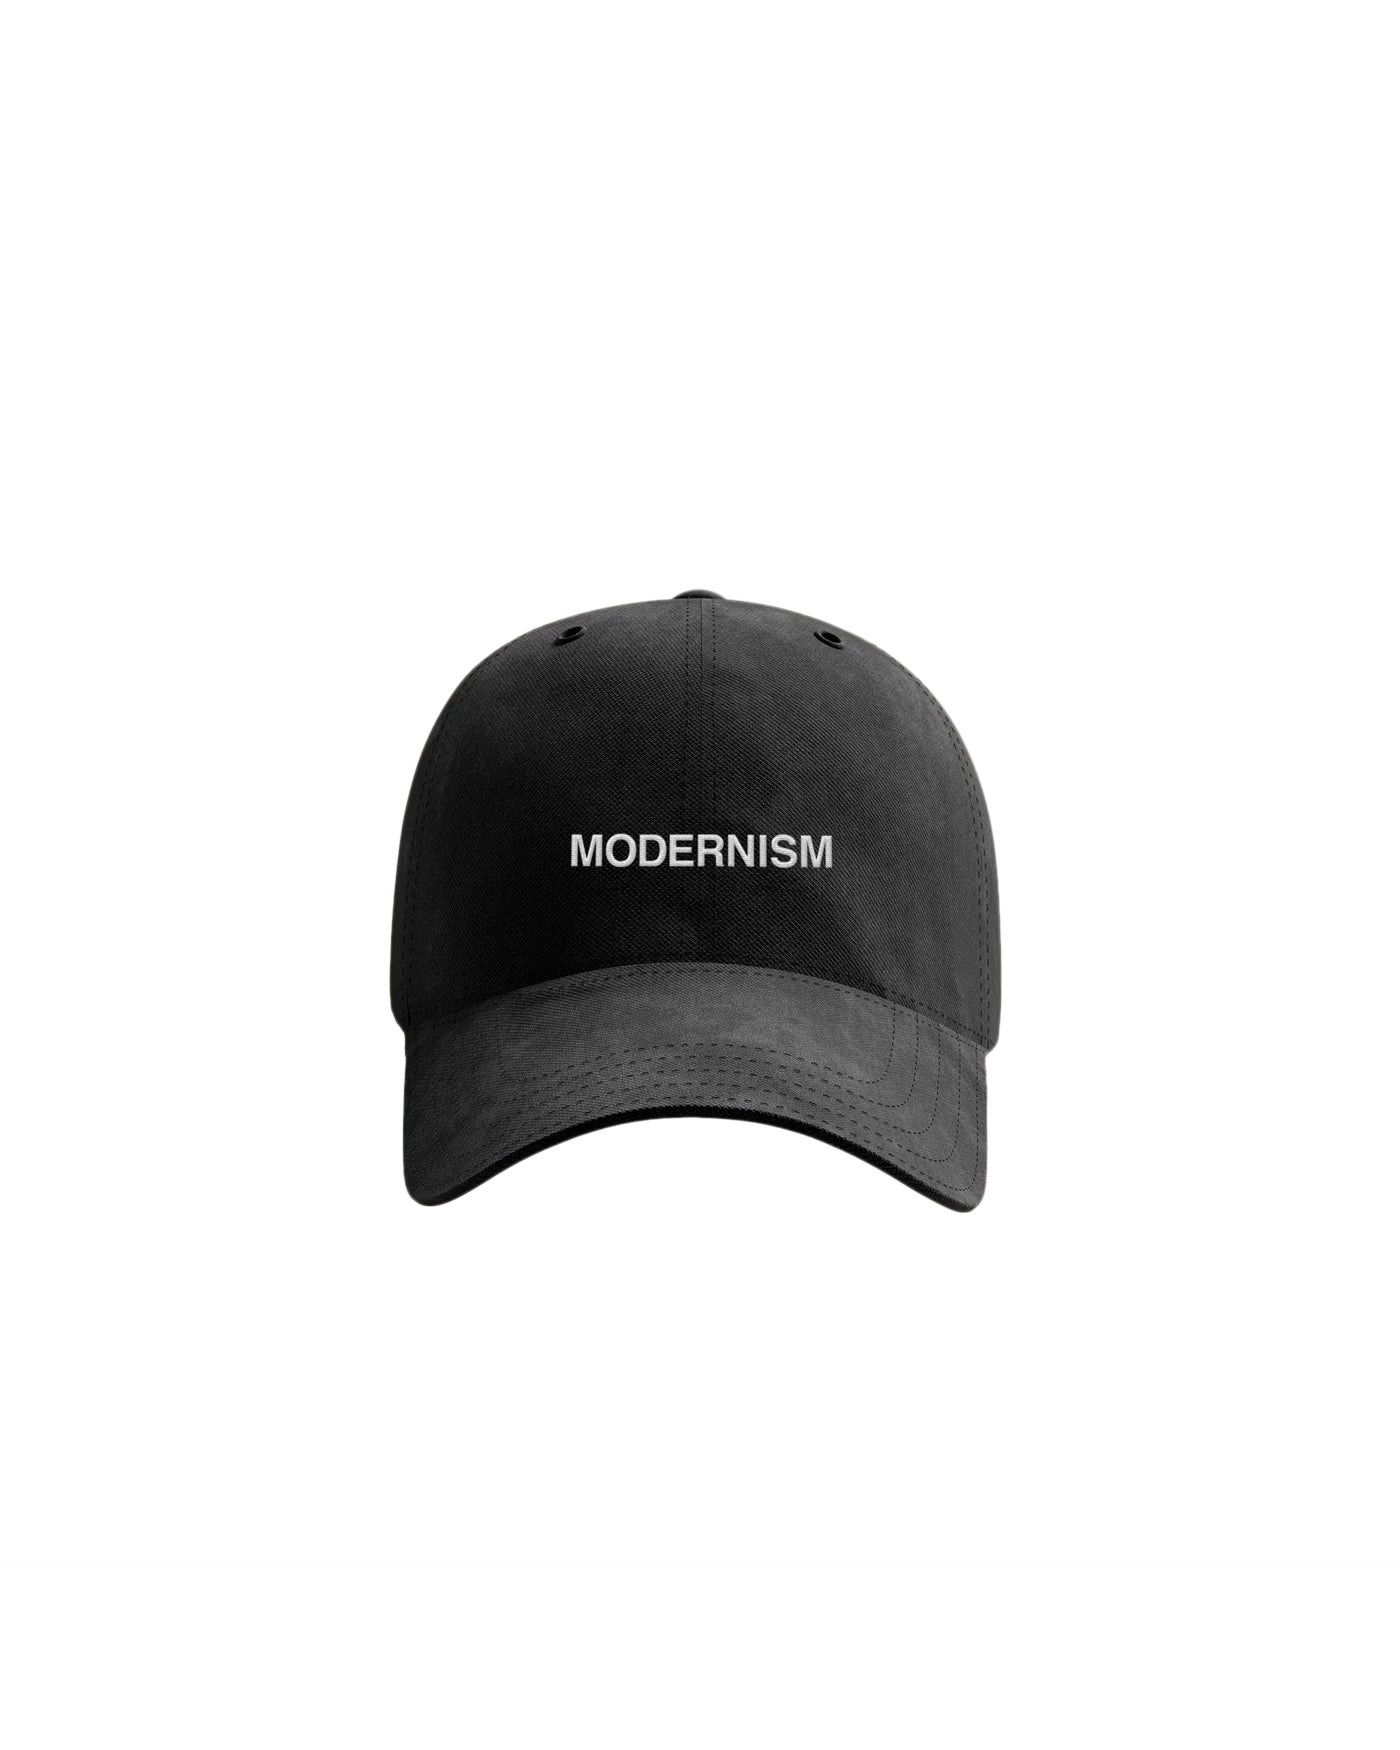 Modernism Dad Hat